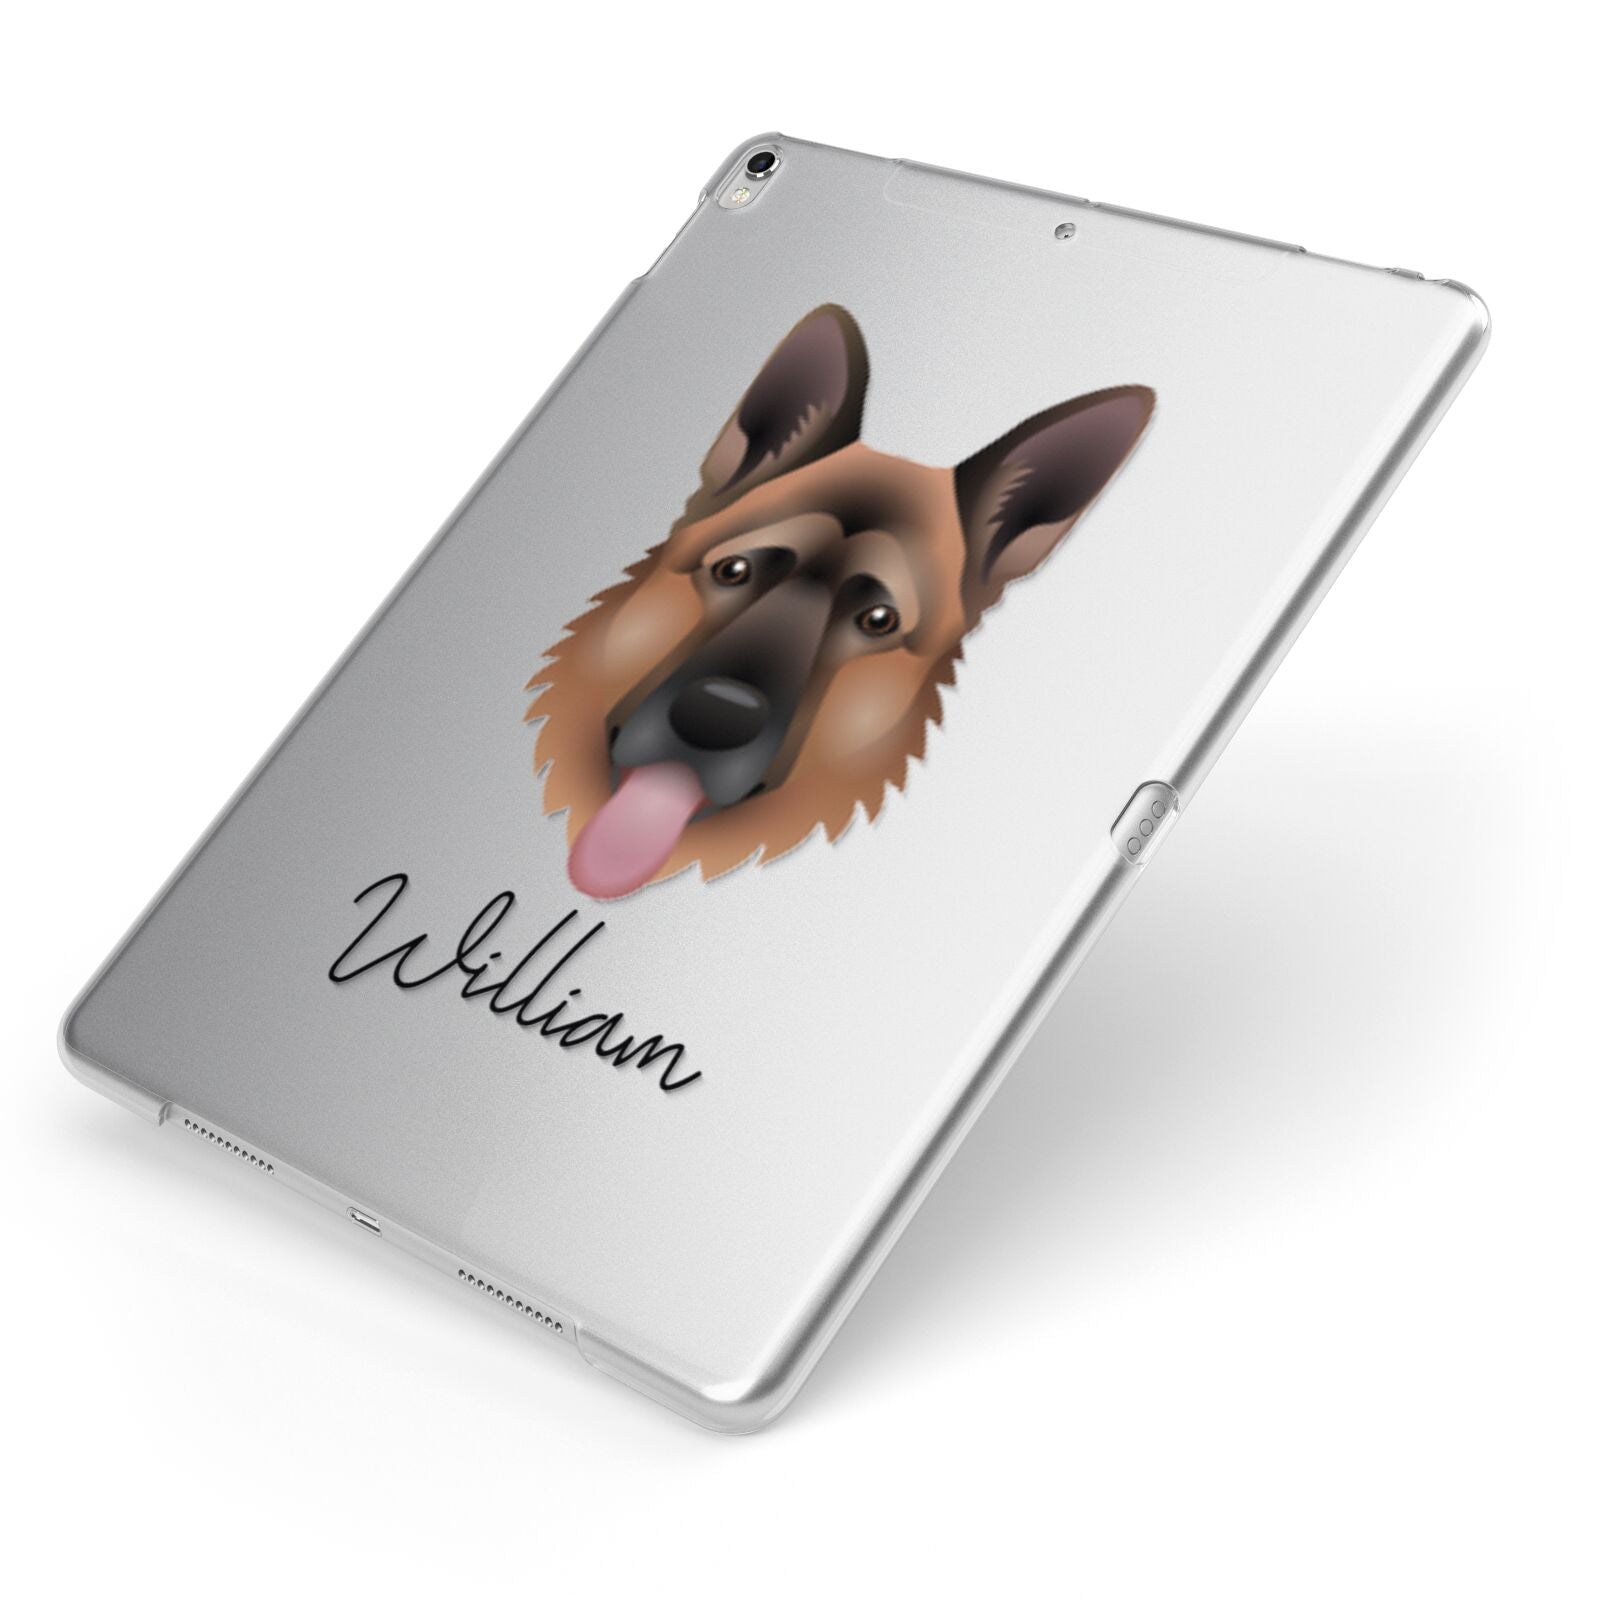 German Shepherd Personalised Apple iPad Case on Silver iPad Side View